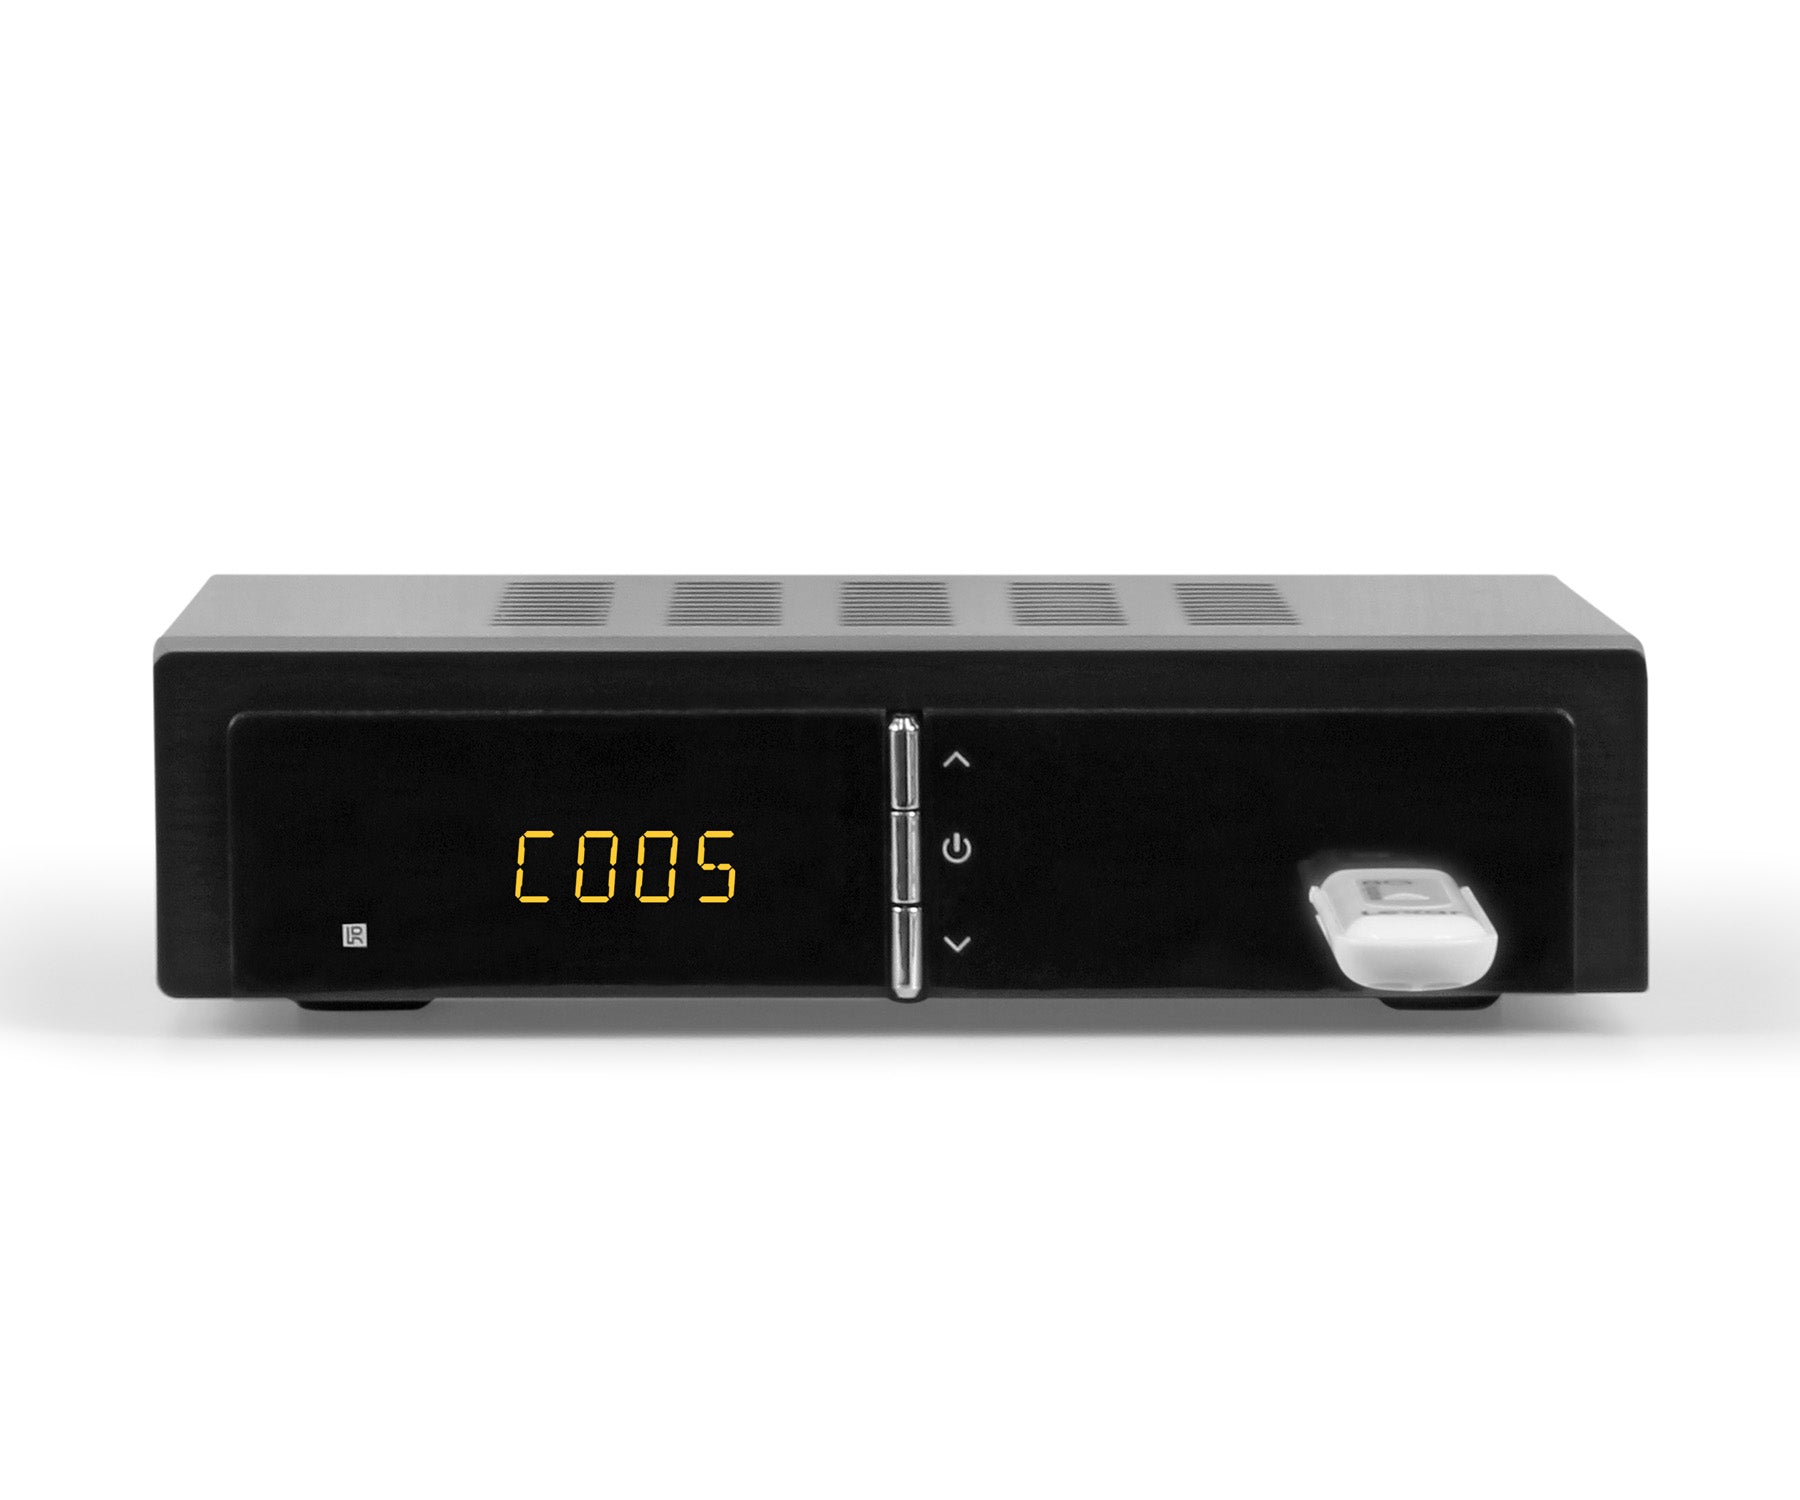 PORTAL TEC Store - 🆕 ANTENA DIGITAL HDTV 3.5 DBI PARA SMART TV TDT CABLE  COAXIAL 5M INTERIOR Y EXTERIOR HD 💥 ➖➖➖➖➖➖➖➖➖➖➖➖➖➖➖ 📣VOLVIÓ A LLEGAR‼  MIRA LA FECHA DOBLE DE LAS